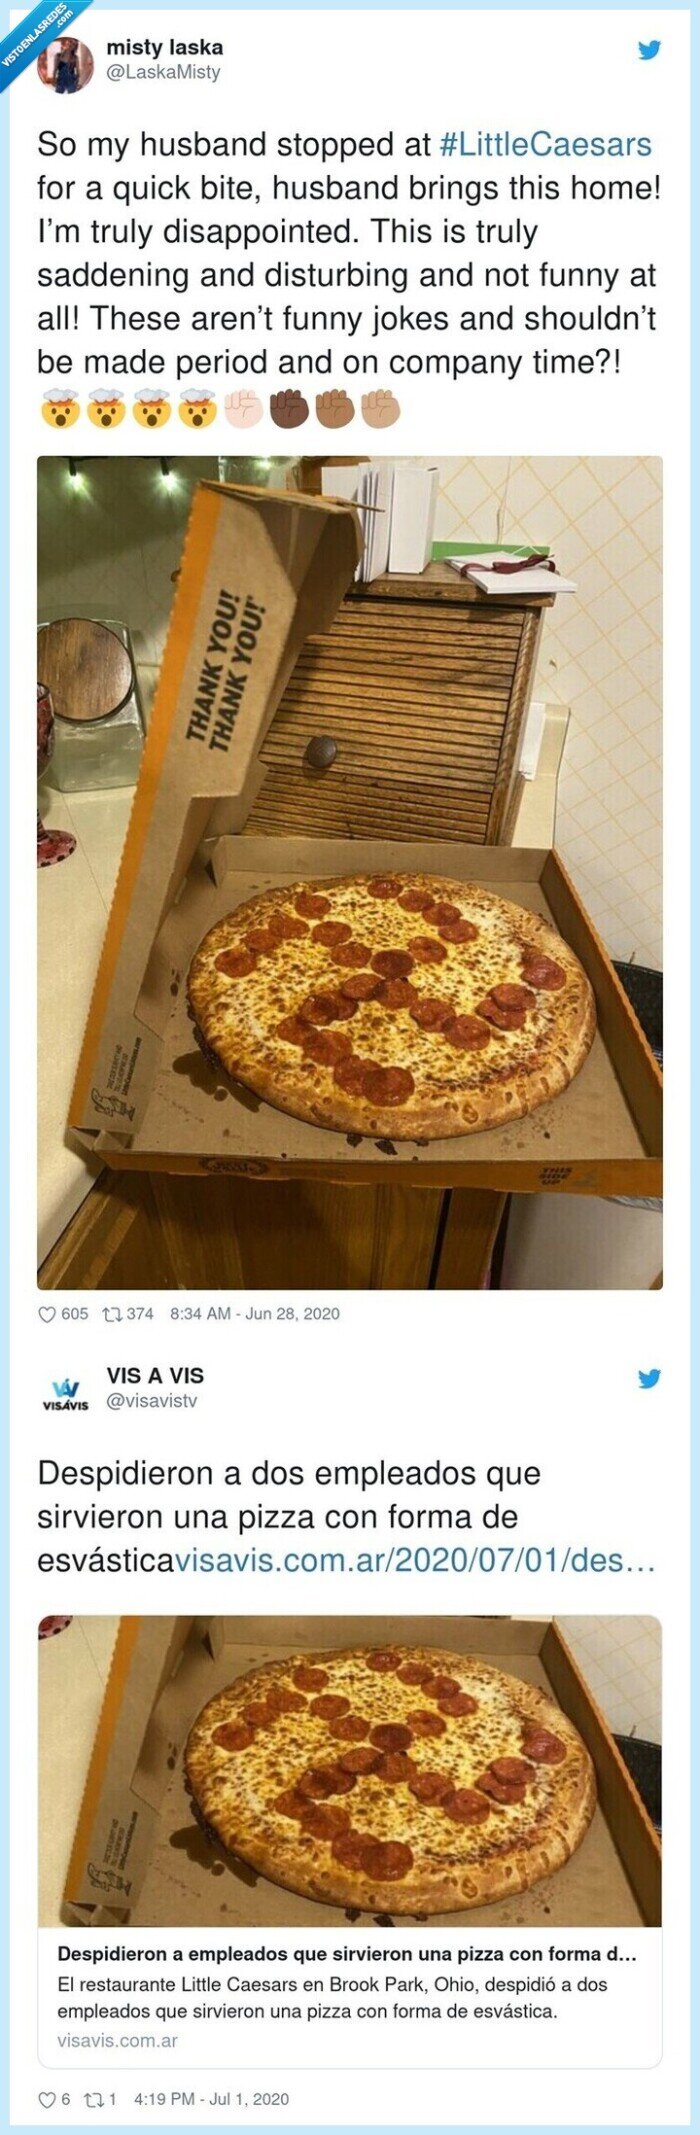 619730 - Pidieron una pizza y lo que se encontraron dentro provocó el despido de dos trabajadores y una ola de incredulidad en las redes sociales